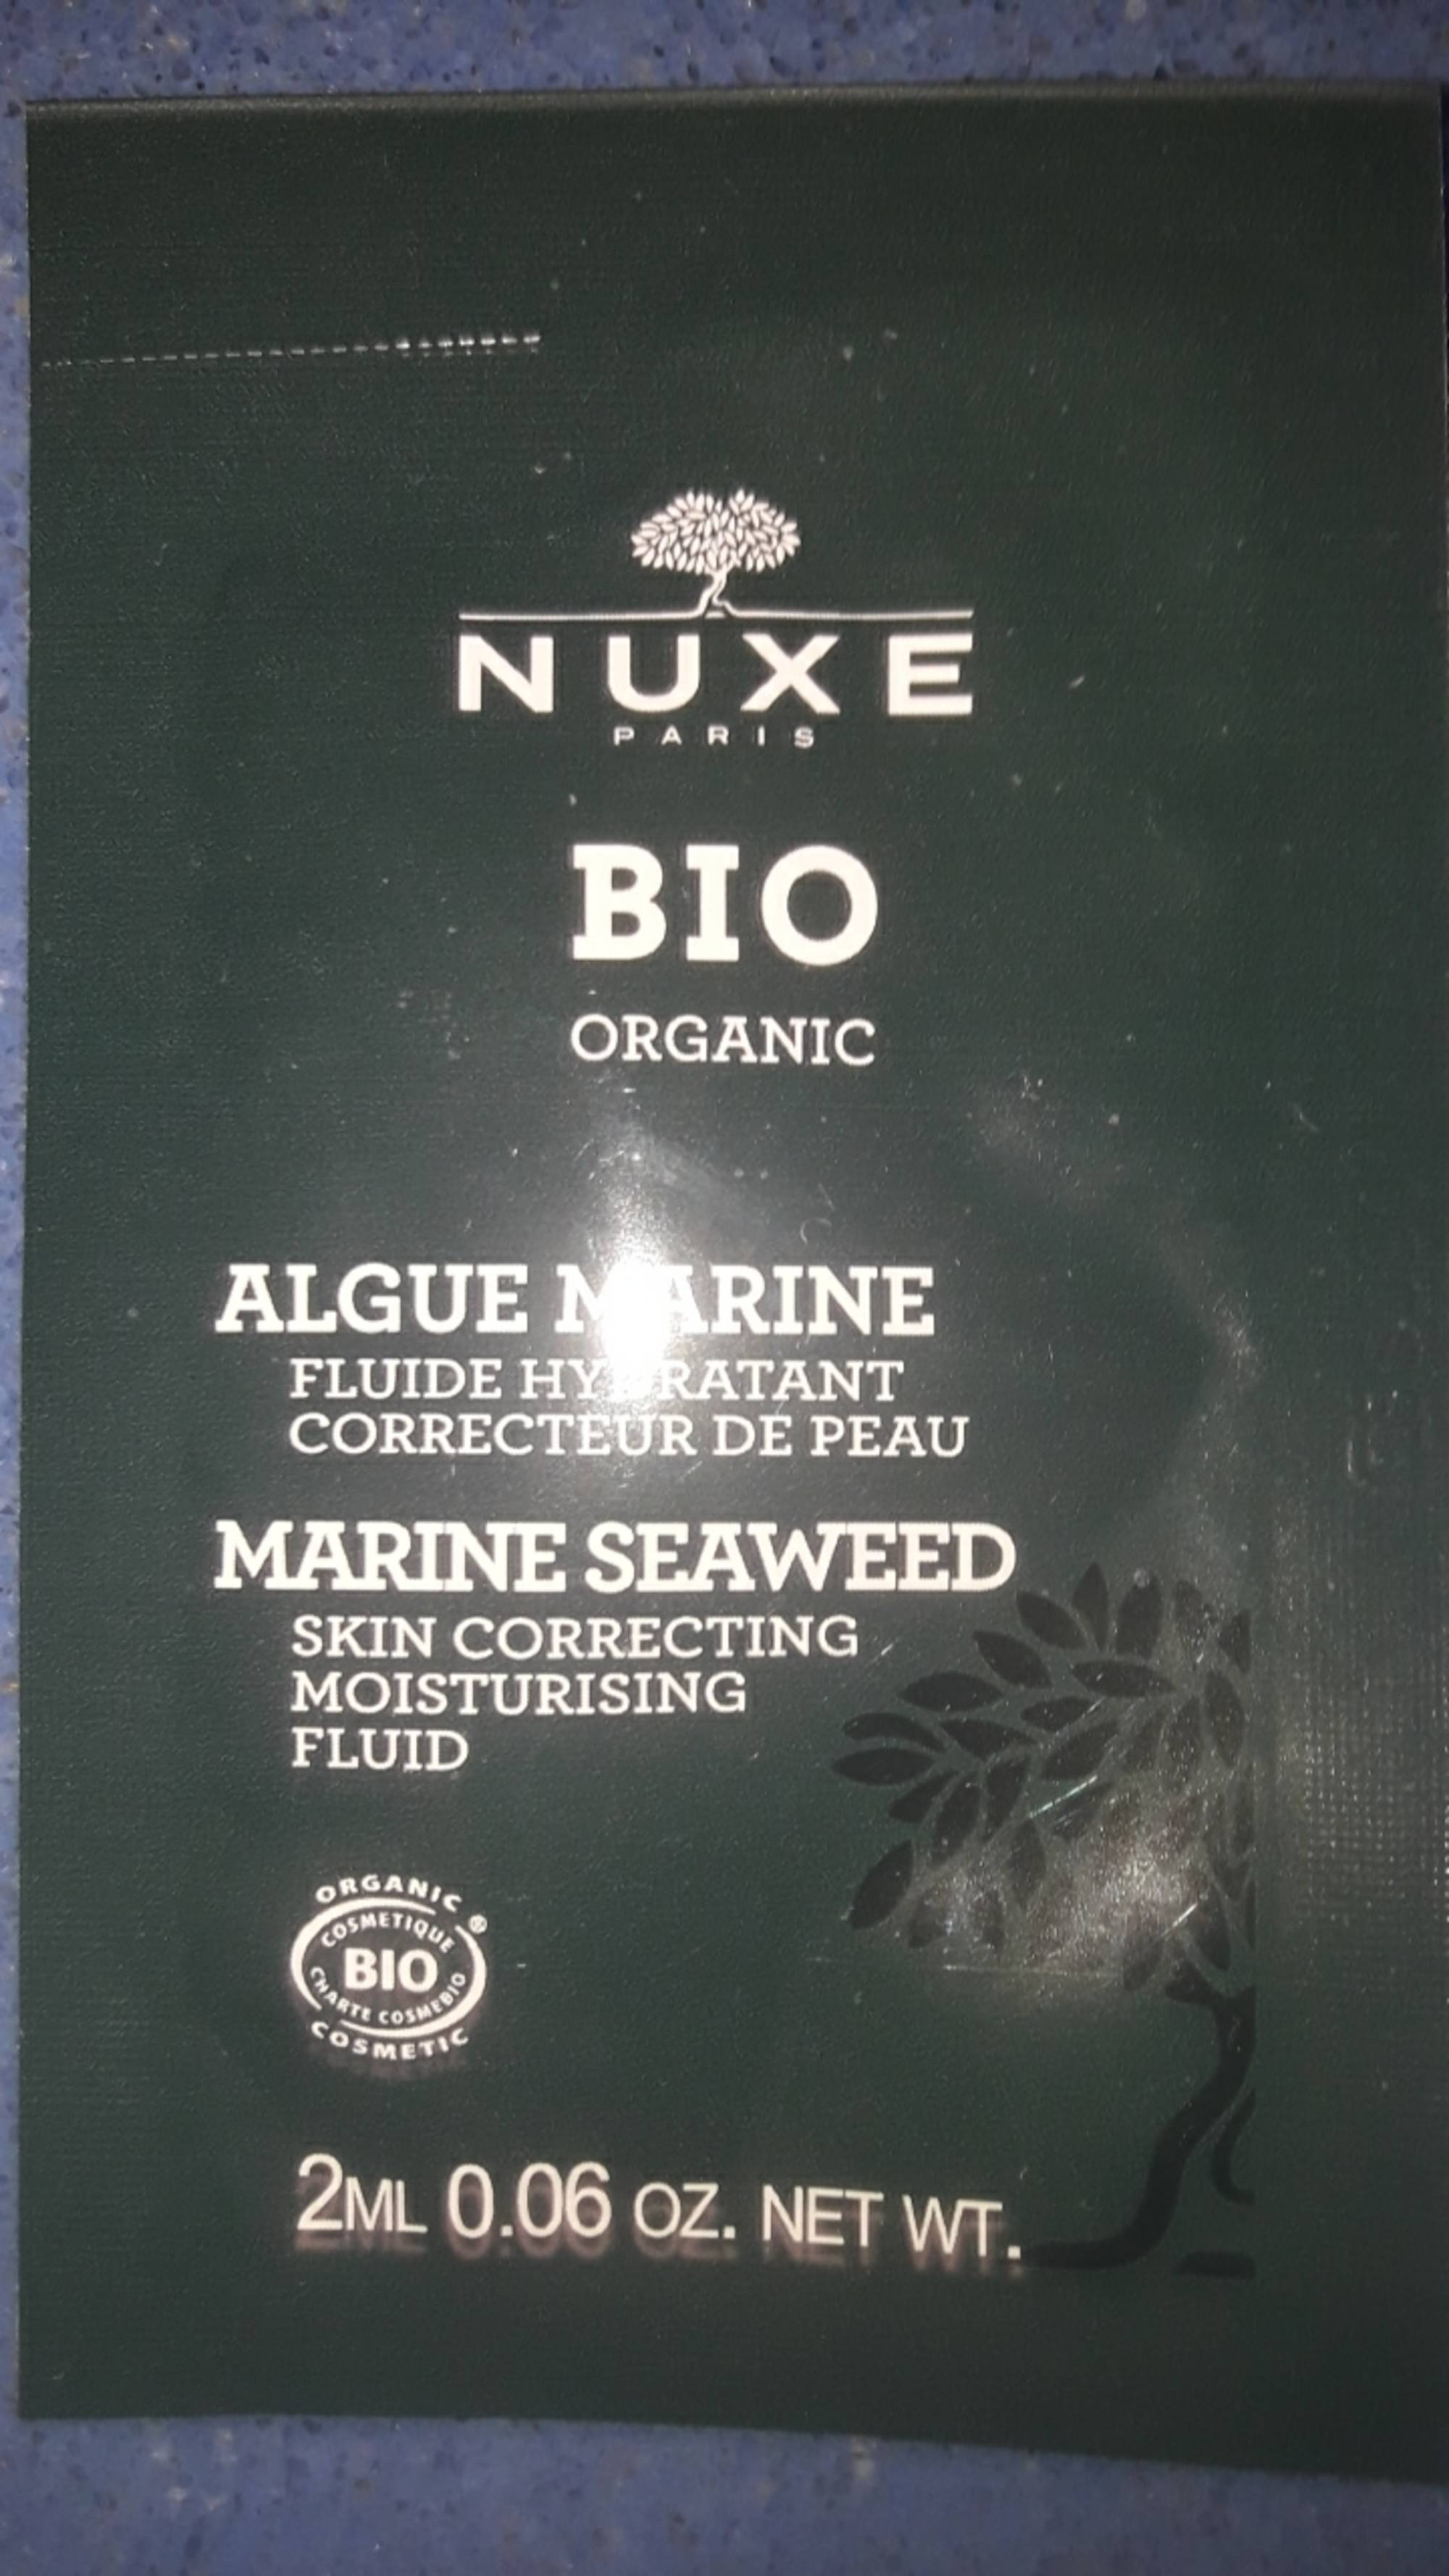 NUXE - Algue marine - Fluide hydratant correcteur de peau